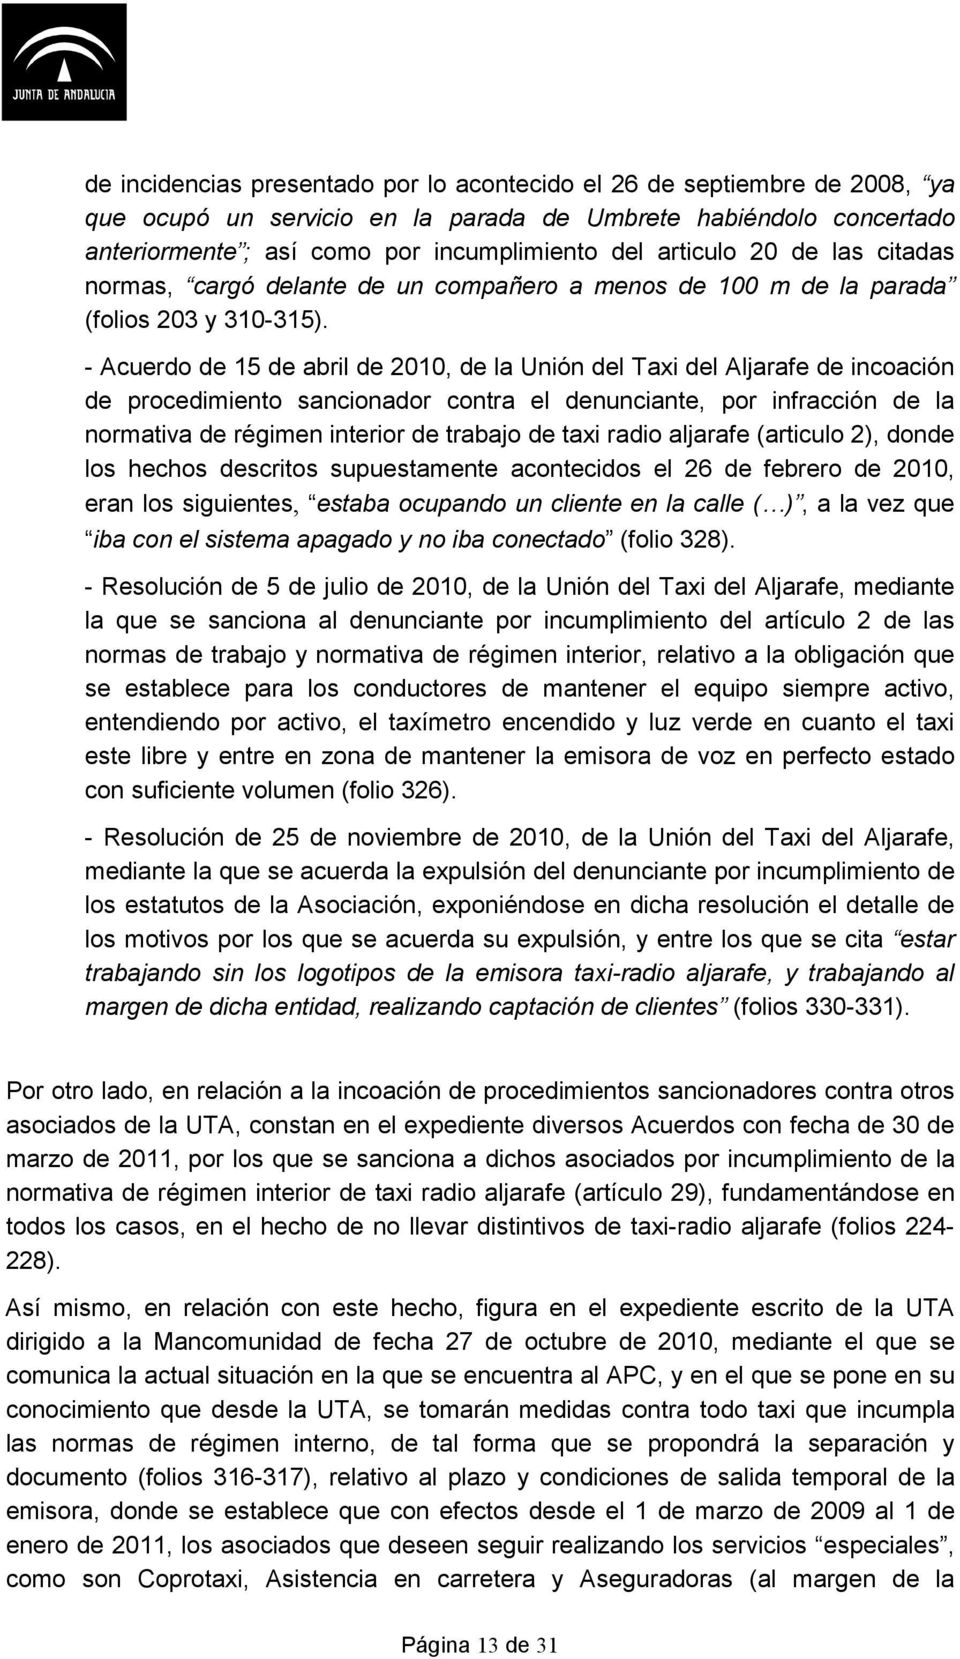 - Acuerdo de 15 de abril de 2010, de la Unión del Taxi del Aljarafe de incoación de procedimiento sancionador contra el denunciante, por infracción de la normativa de régimen interior de trabajo de